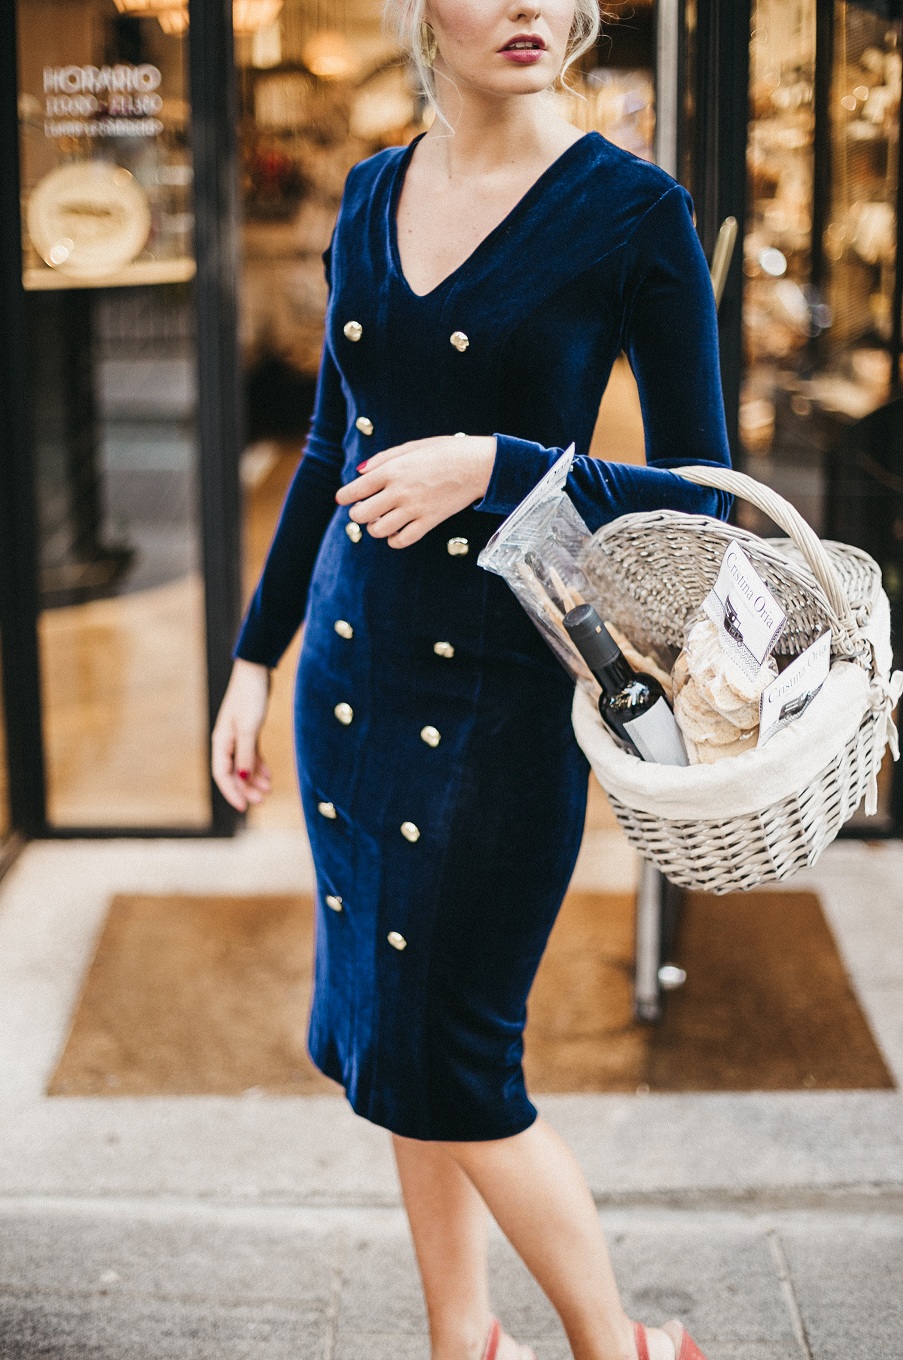 Vestido de veludo azul e botões dourados. Credits: Cherubina